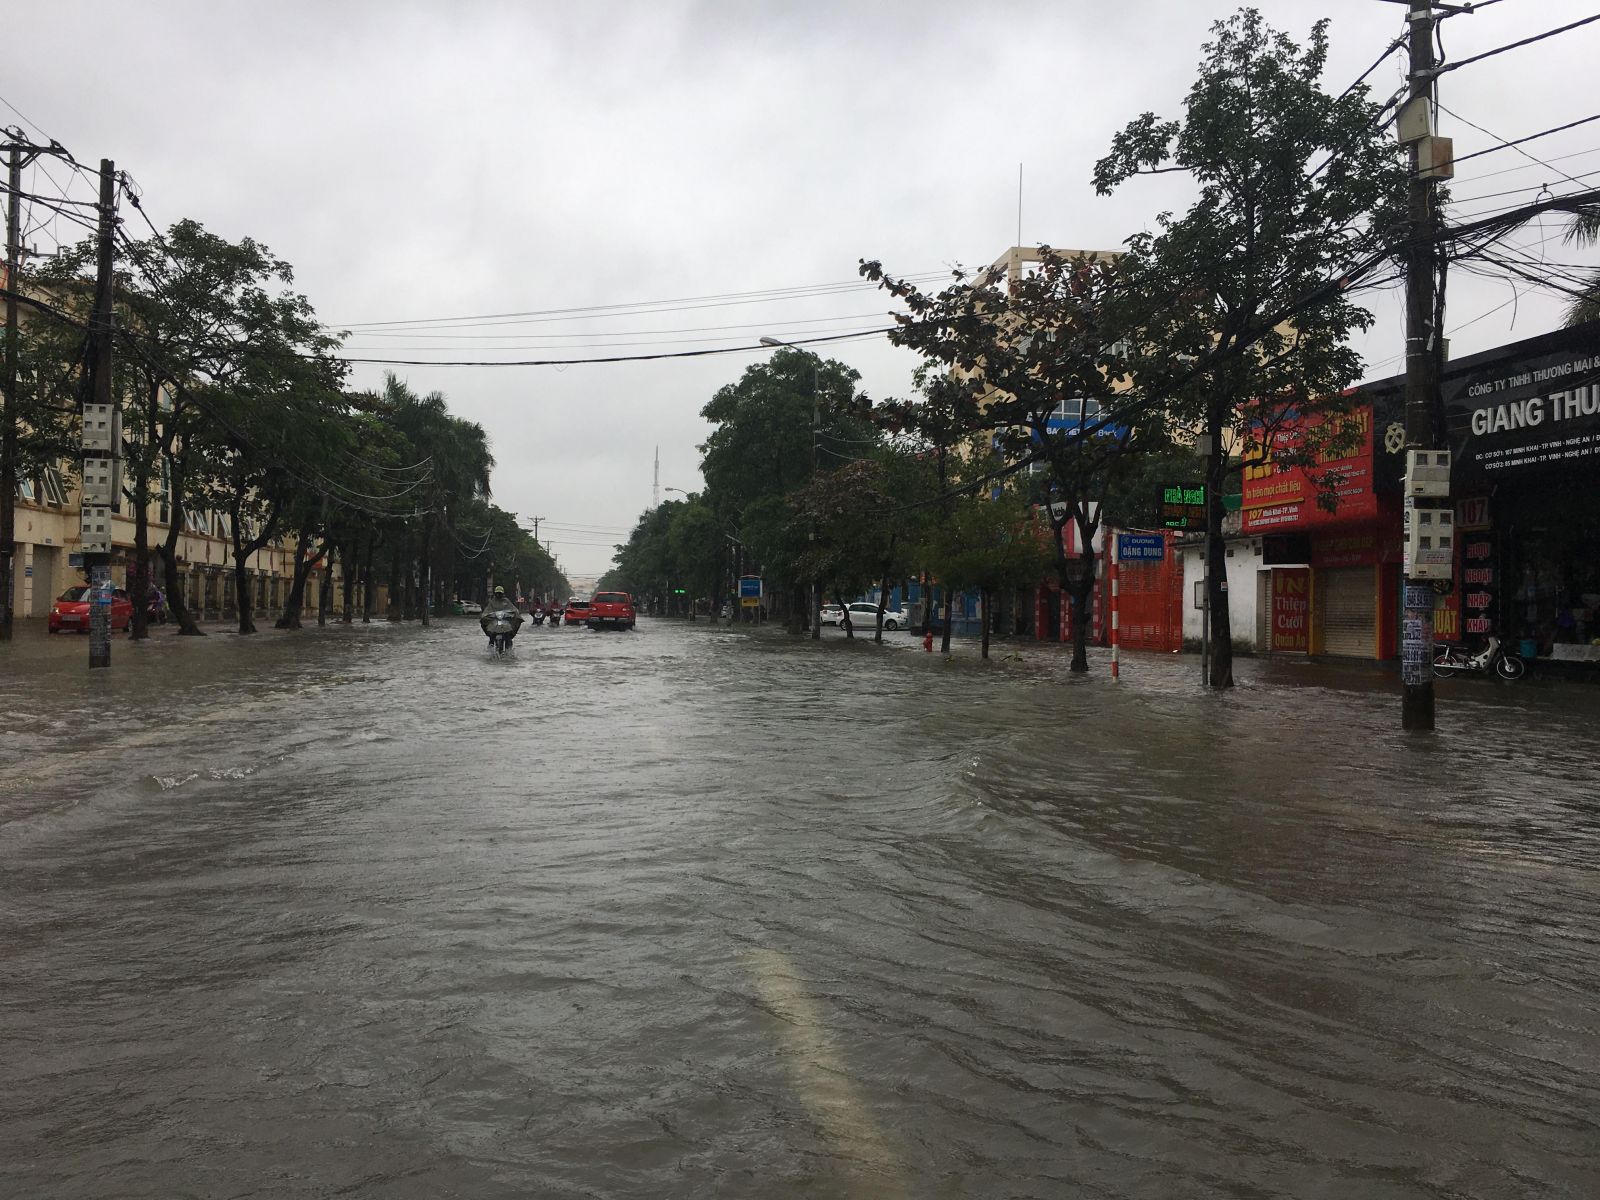 Đường Minh khai, trung tâm buôn bán sầm uất nhất TP Vinh không một bóng người do ngập tràn nước sau một ngày đêm mưa lớn